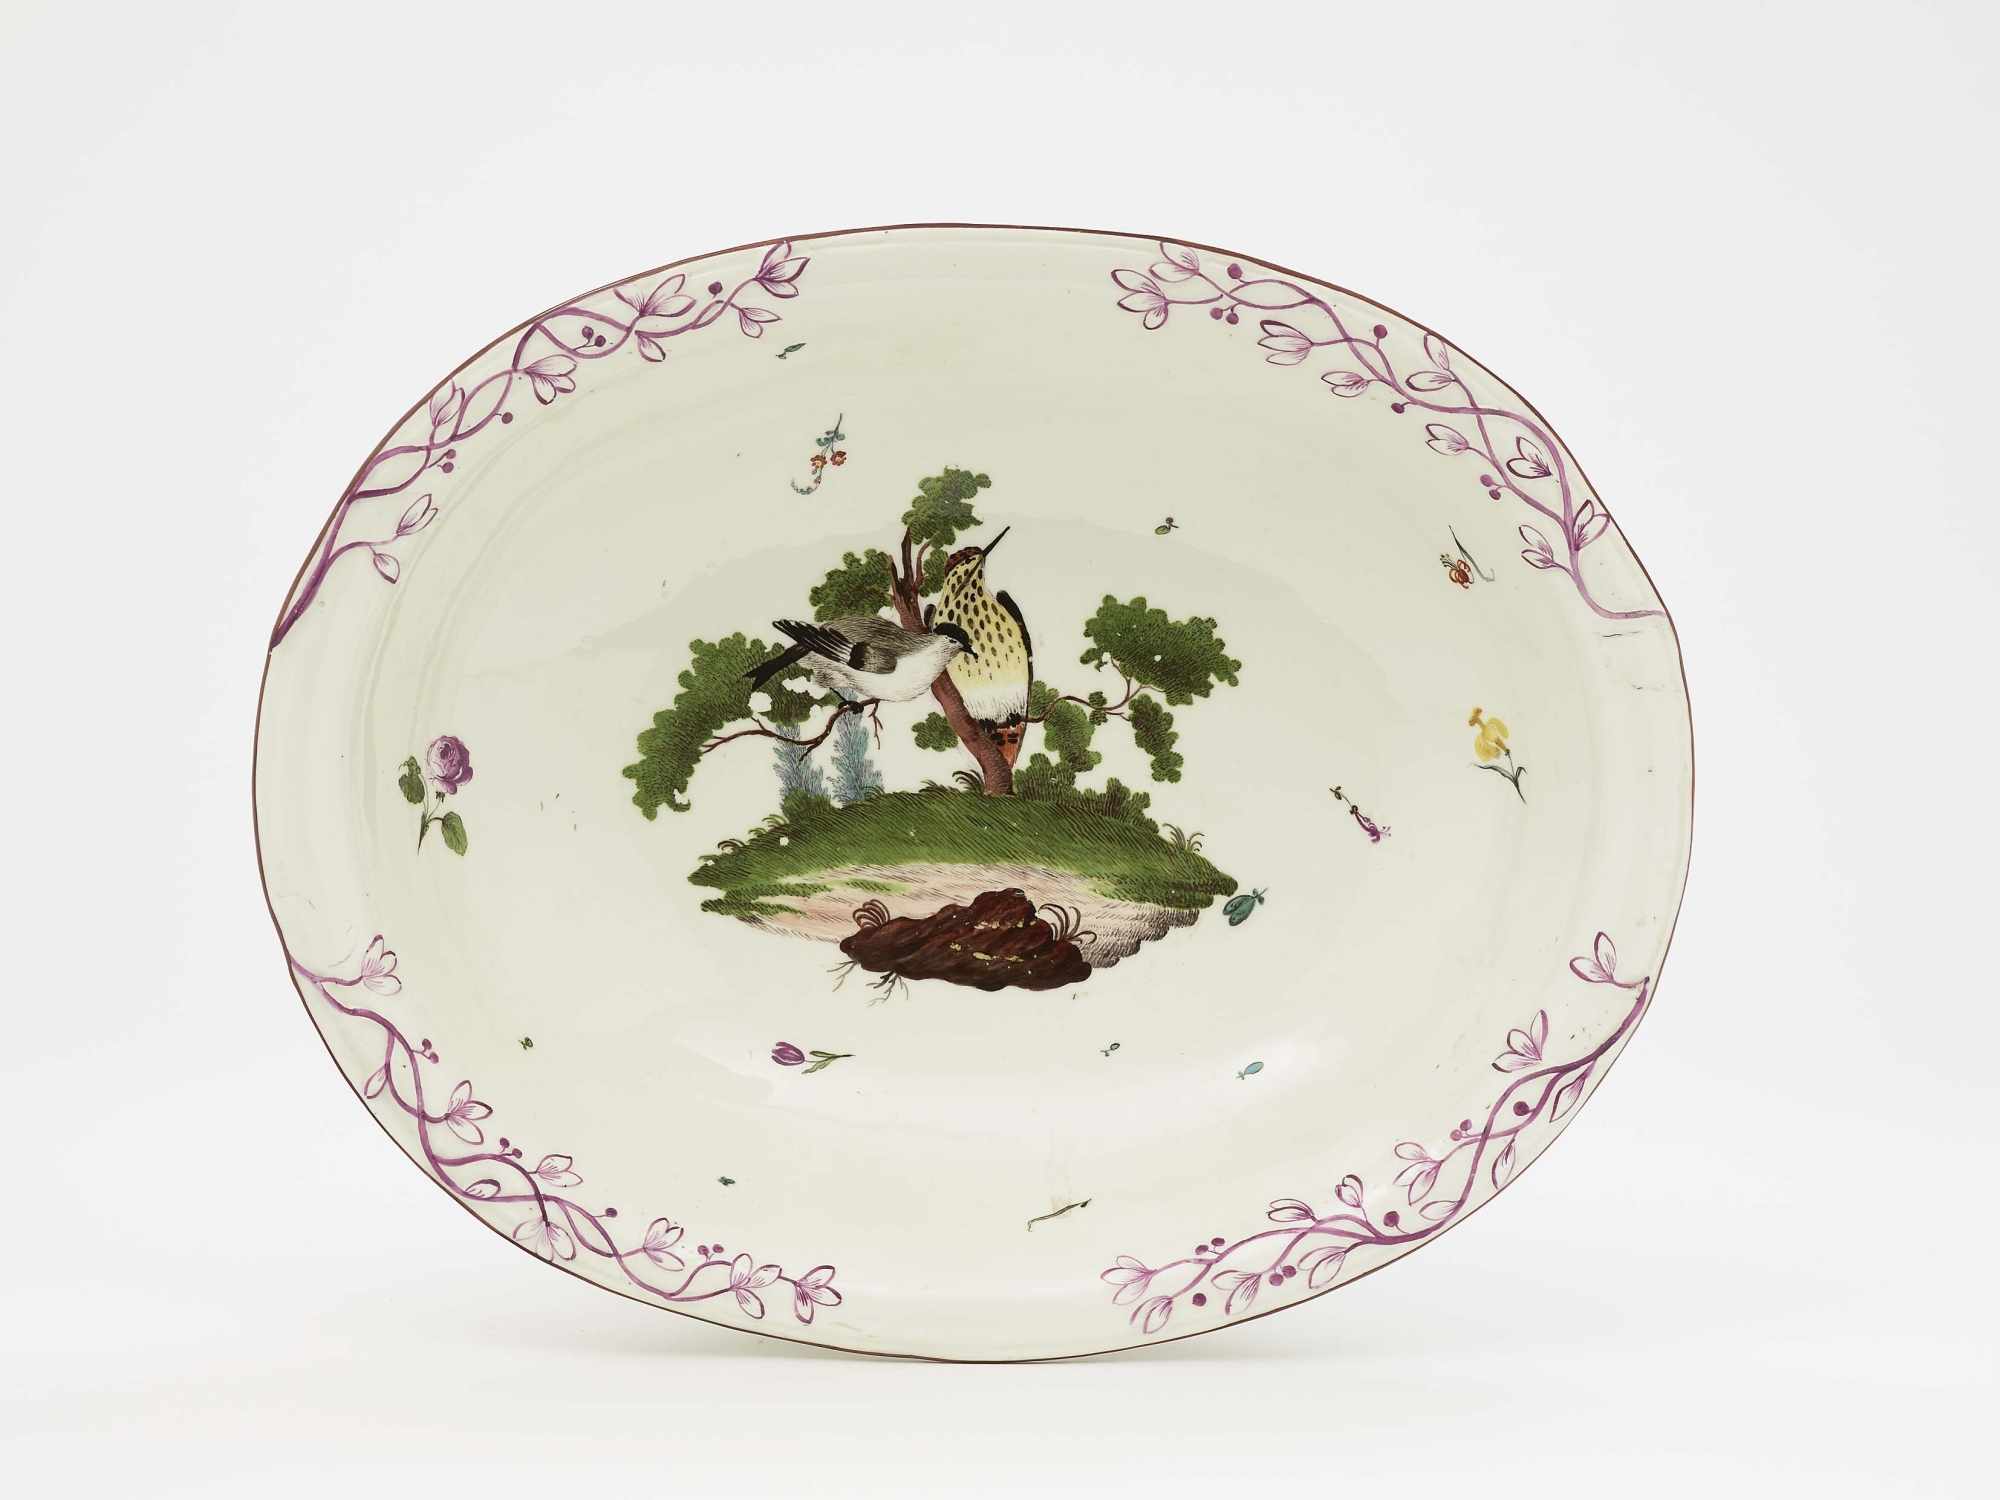 Schale Frankenthal, 2. Hälfte 18. Jh. Porzellan. Purpurstaffage. Oval mit reliefierten Blattranken